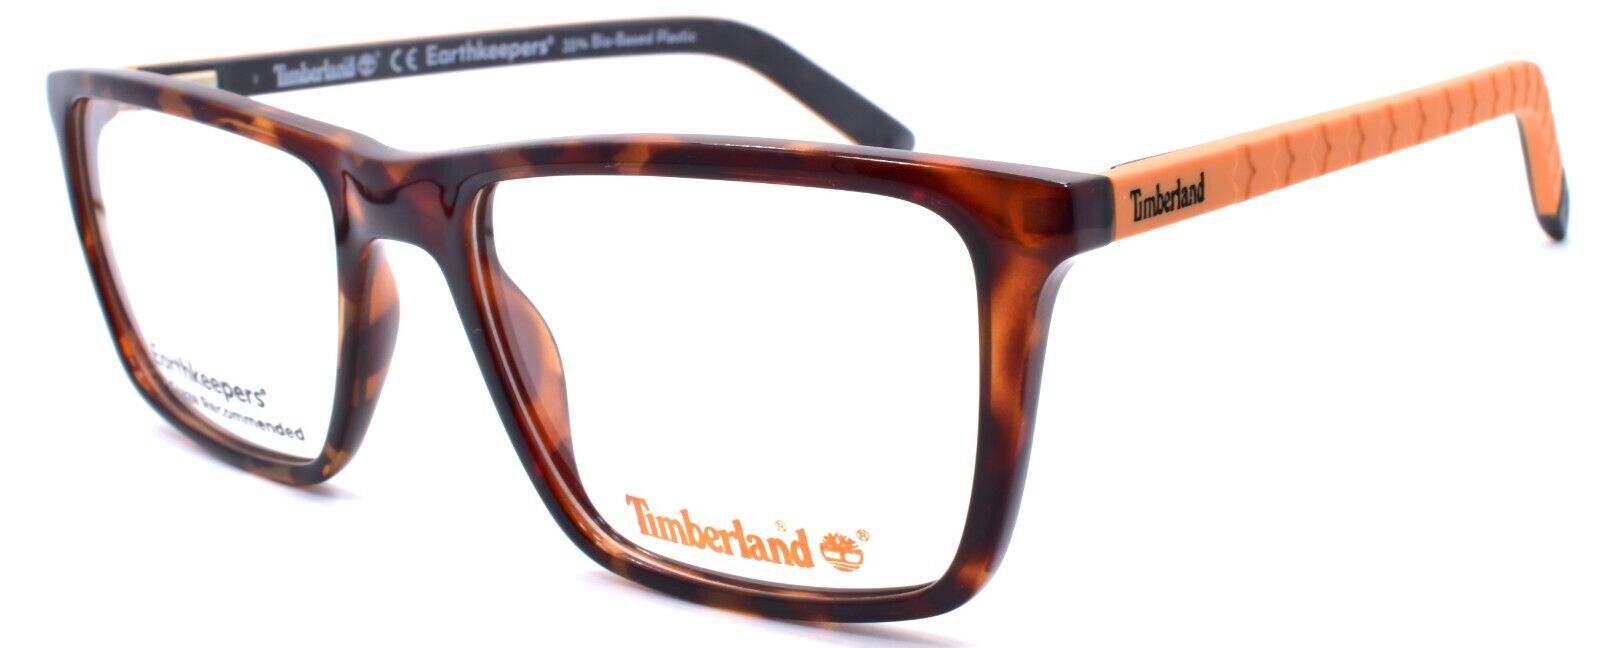 1-TIMBERLAND TB1680 052 Men's Eyeglasses Frames 54-18-145 Dark Havana-889214162793-IKSpecs